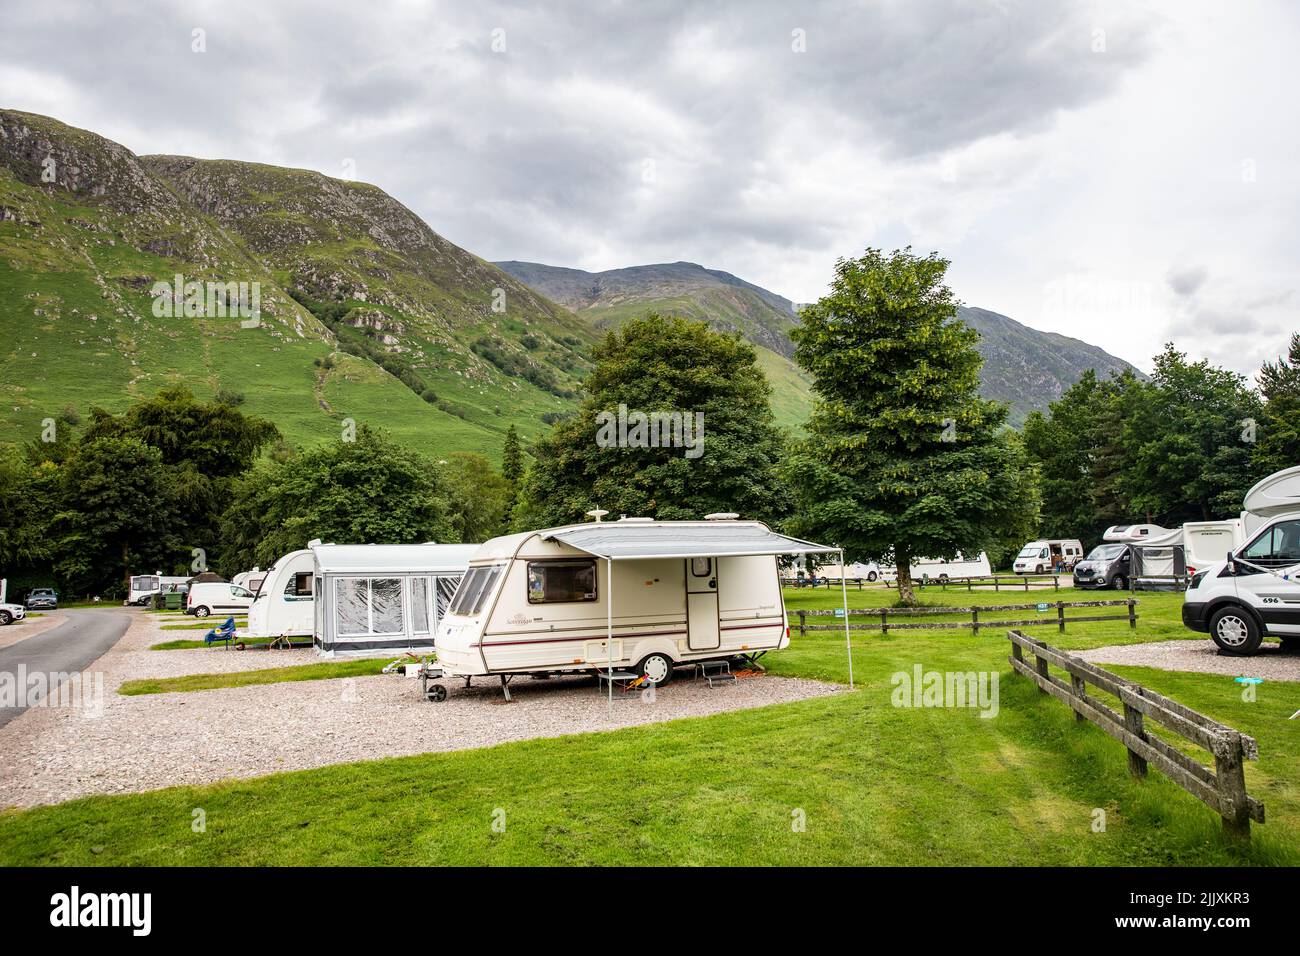 Glen Nevis caravan e camper campeggio ai piedi del ben Nevis, la montagna più alta della Gran Bretagna, Grampian Mountain Range, Scozia, Regno Unito Foto Stock